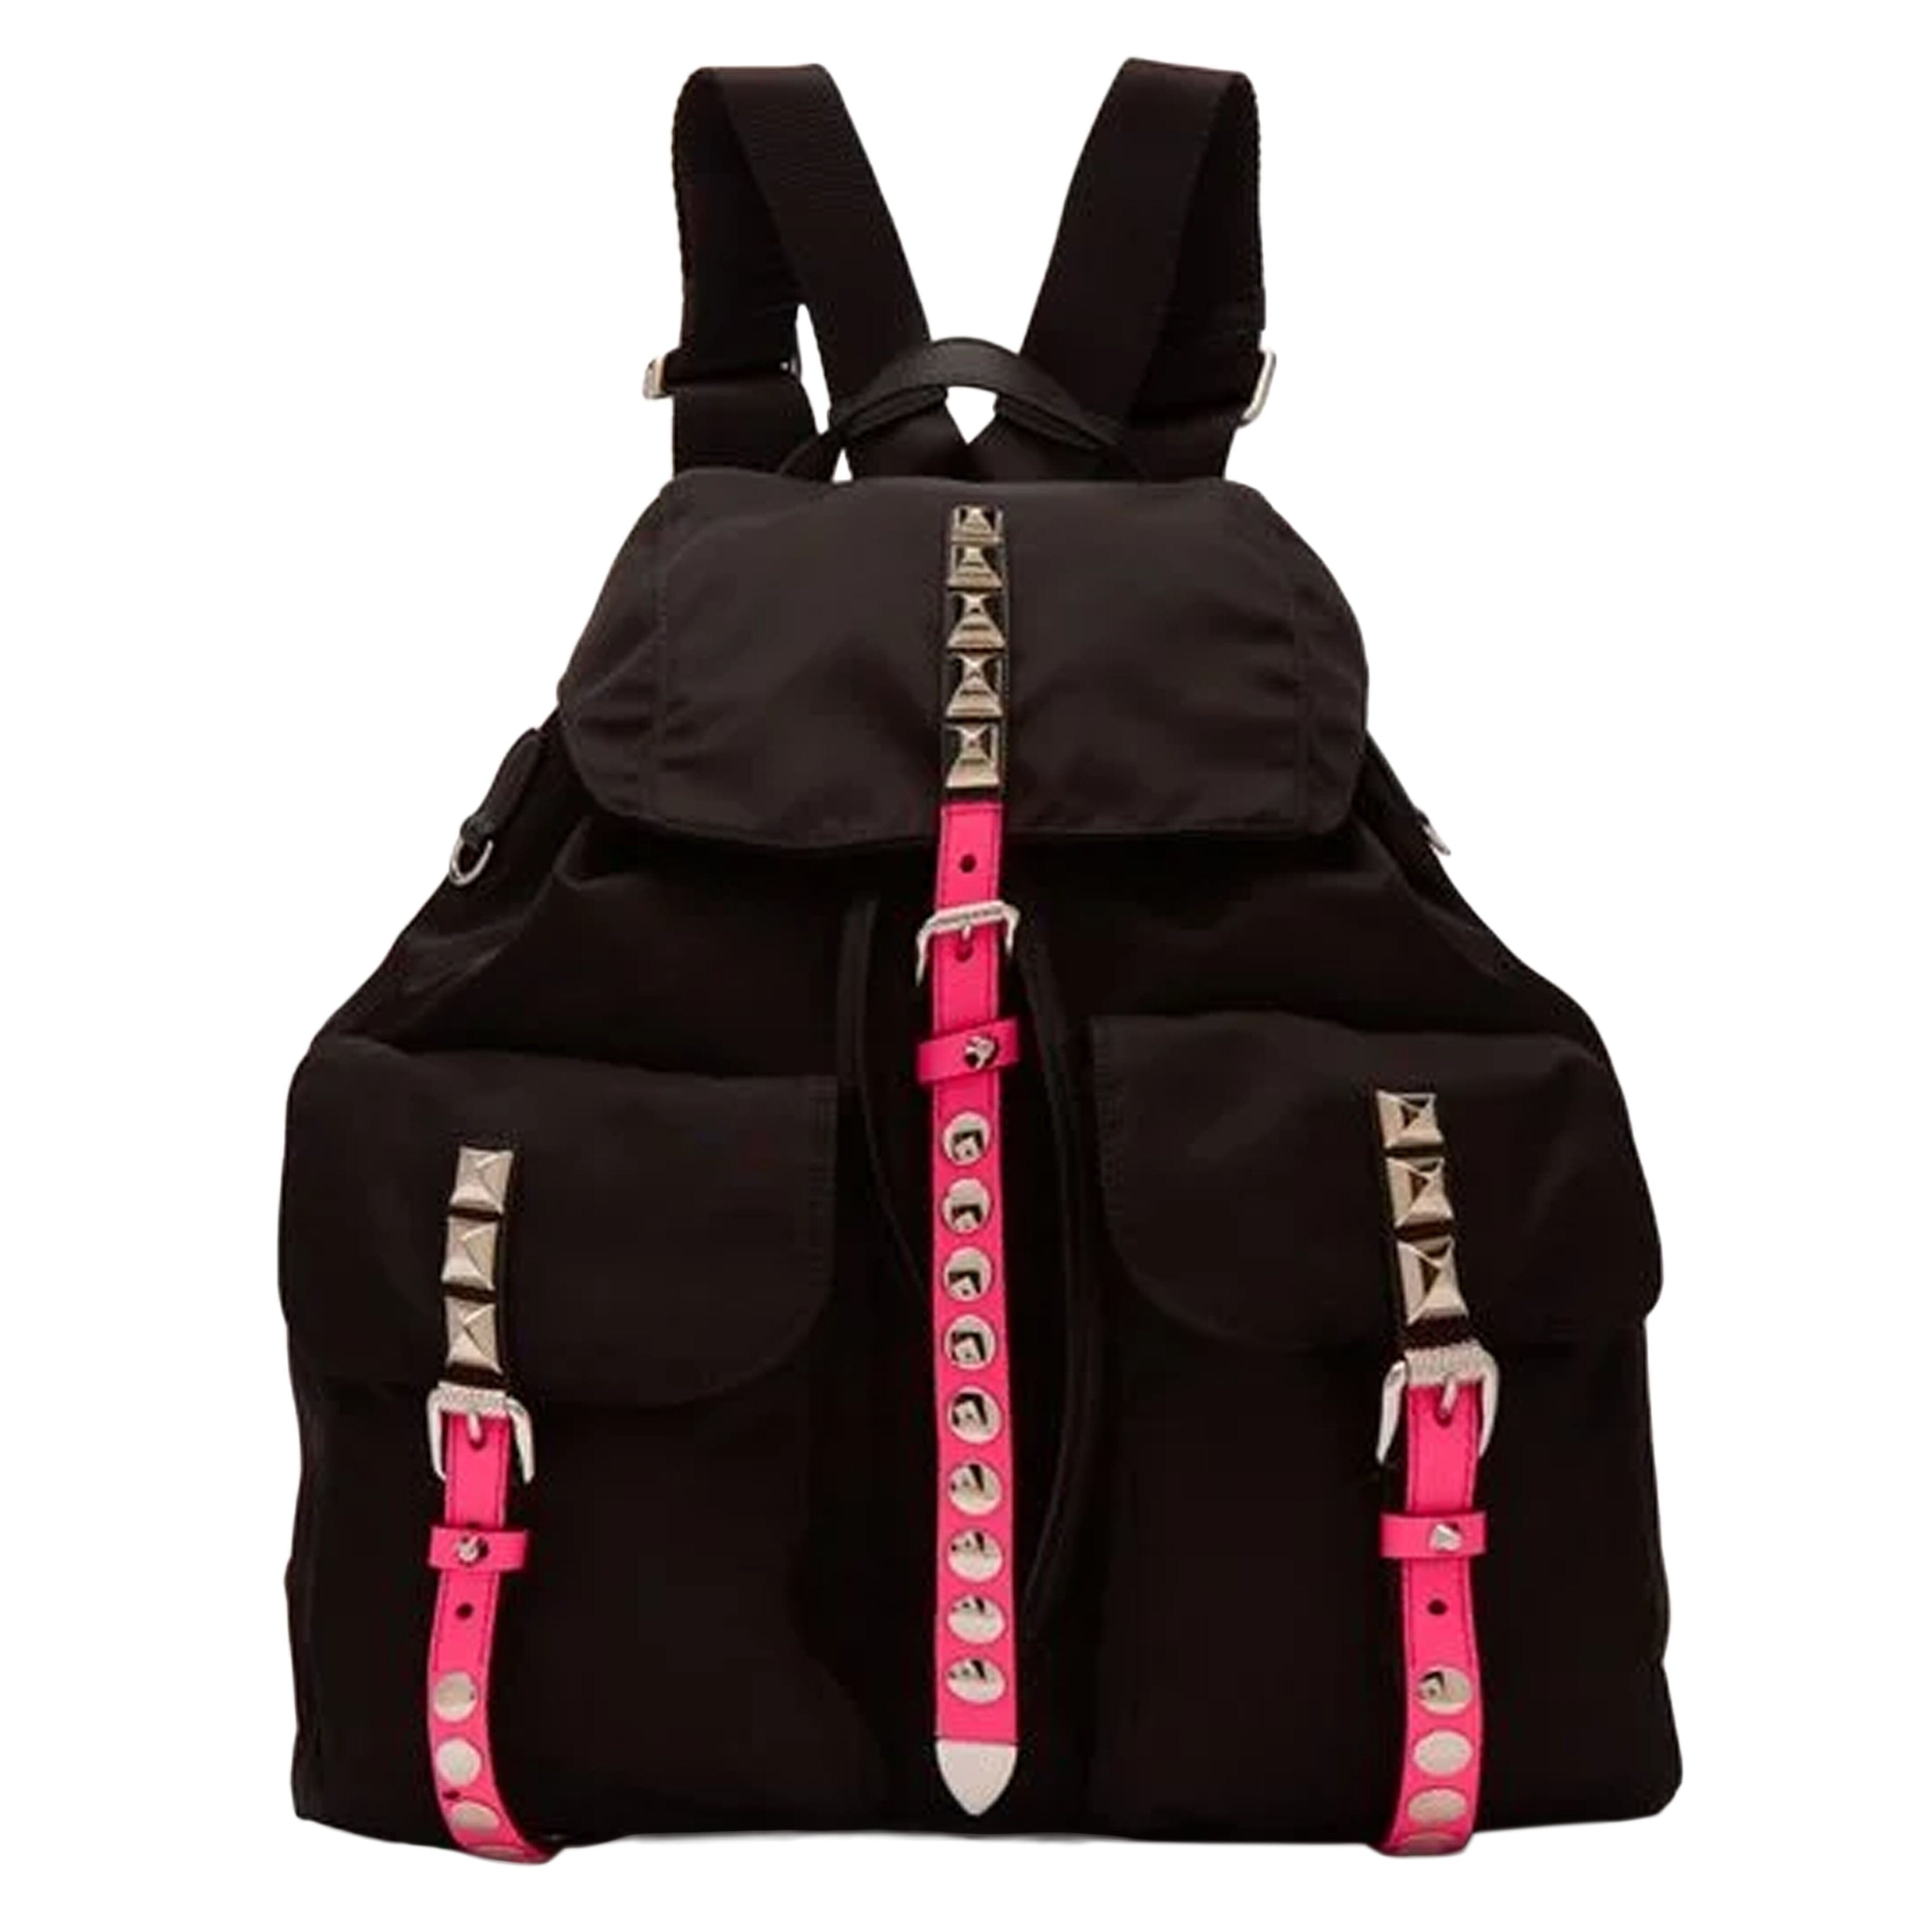 Black New Vela Studded Backpack